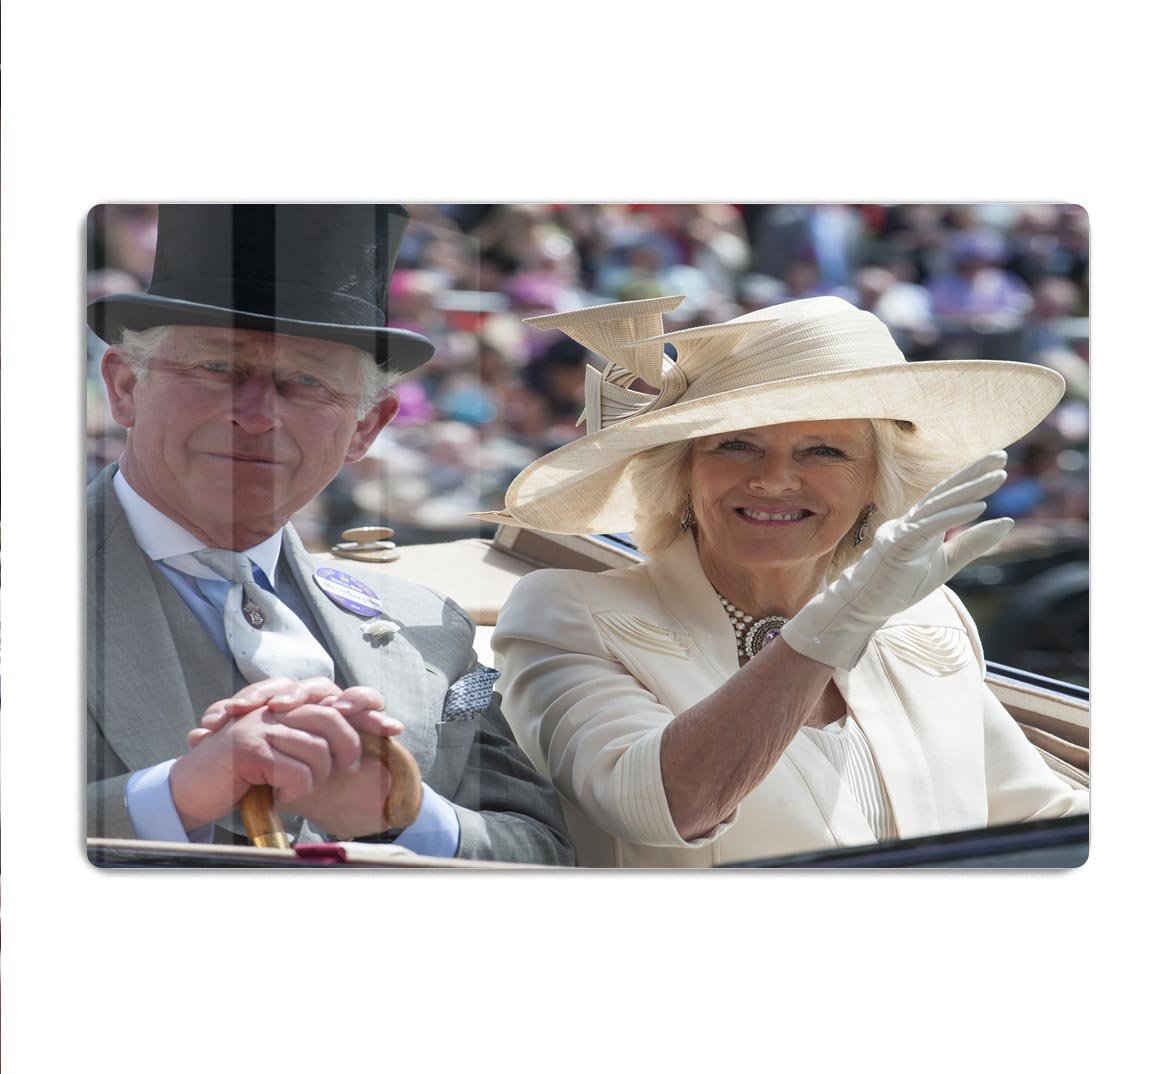 Prince Charles and Camilla at the Royal Ascot HD Metal Print